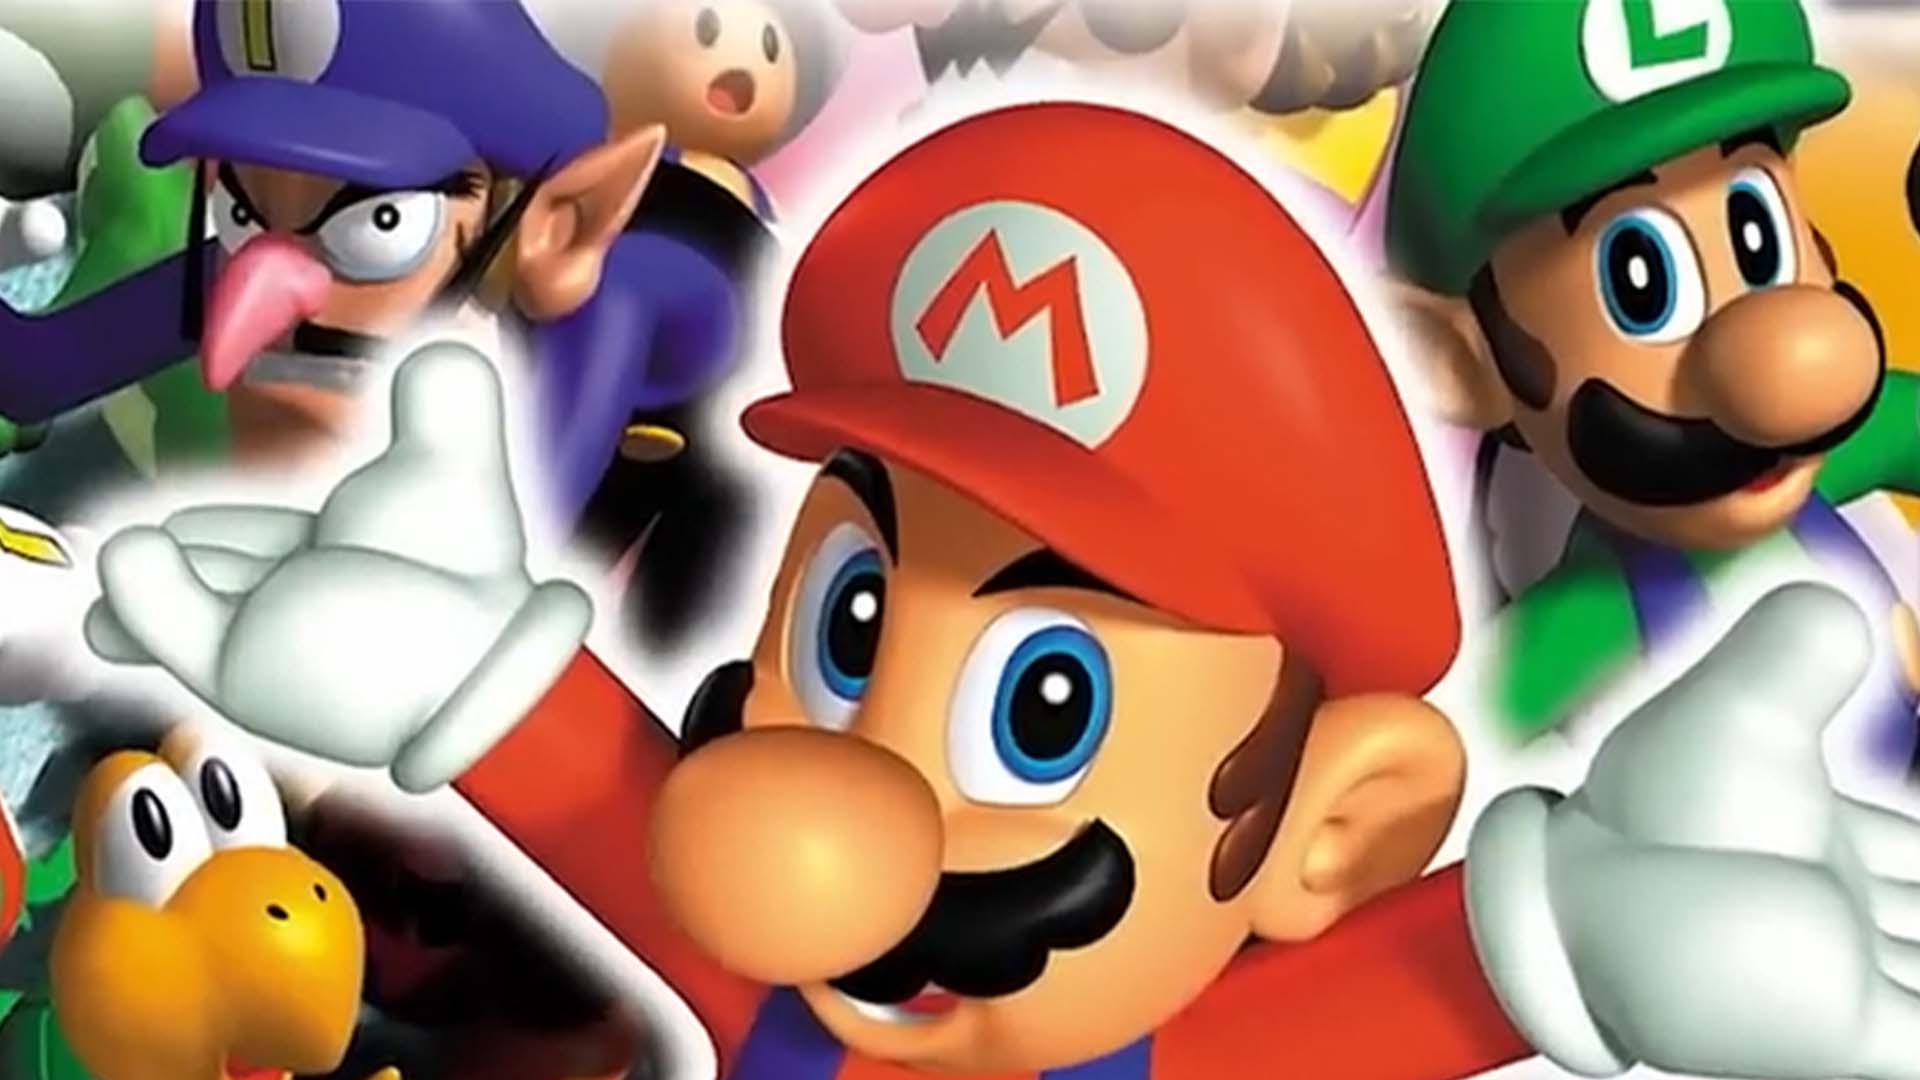 Análise: Mario Party Superstars é a celebração de um clássico